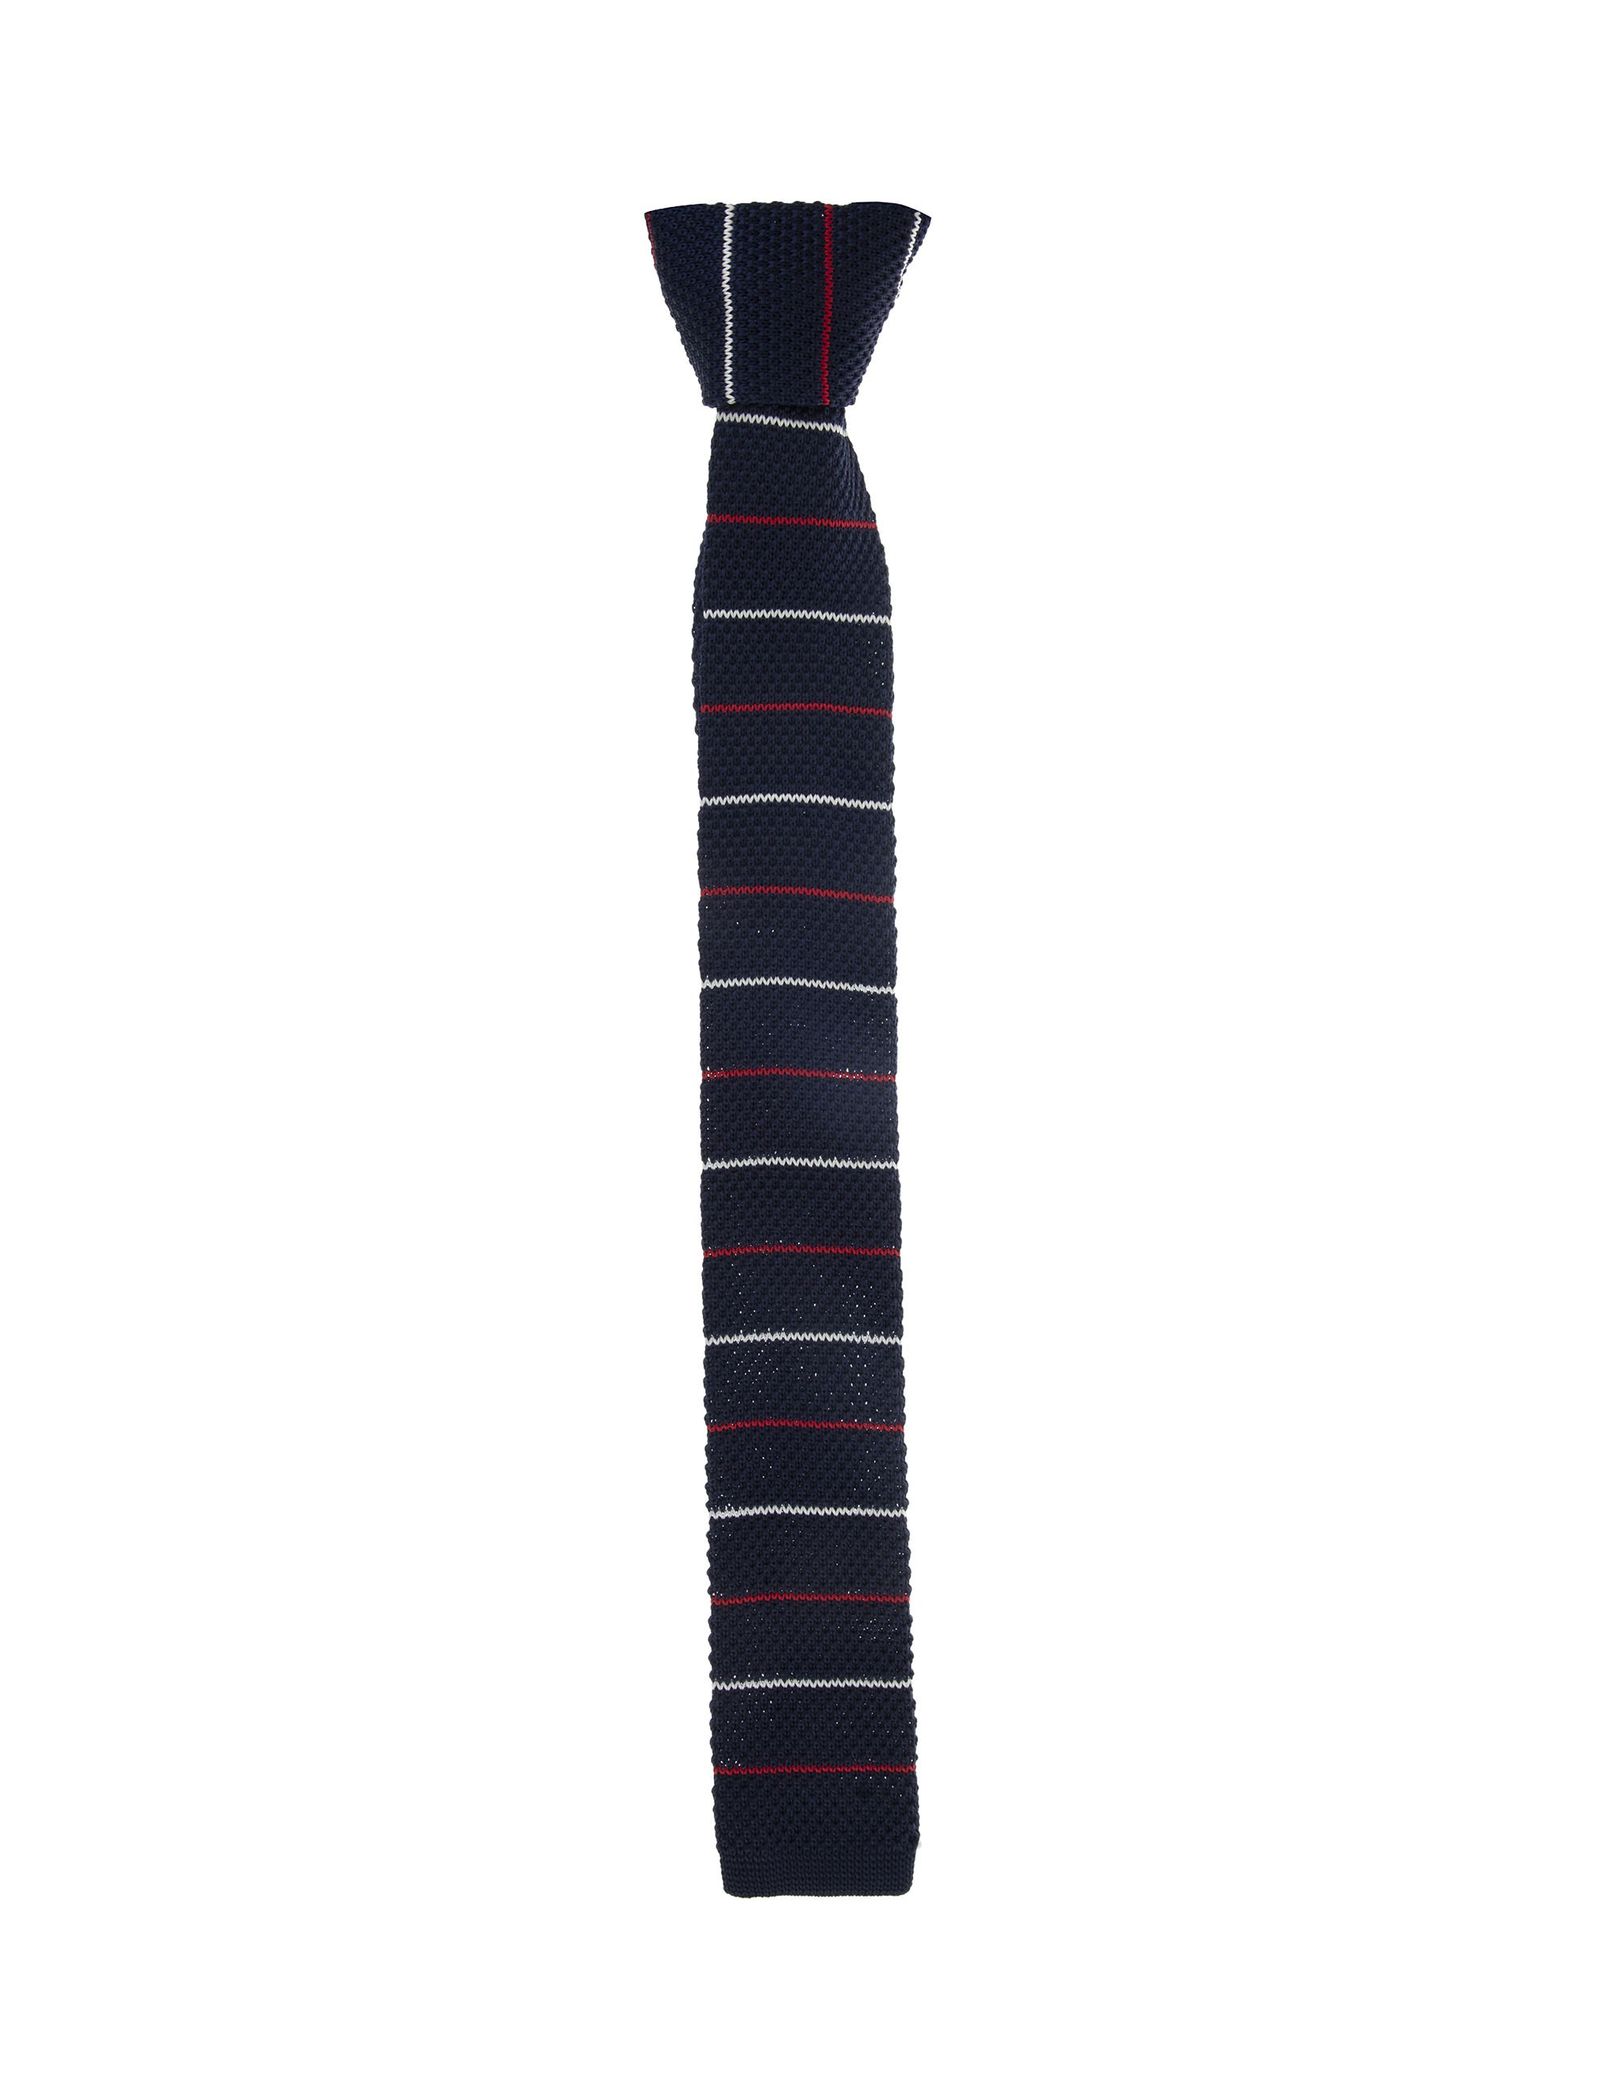 کراوات ساده مردانه - سلکتد تک سایز -  - 2